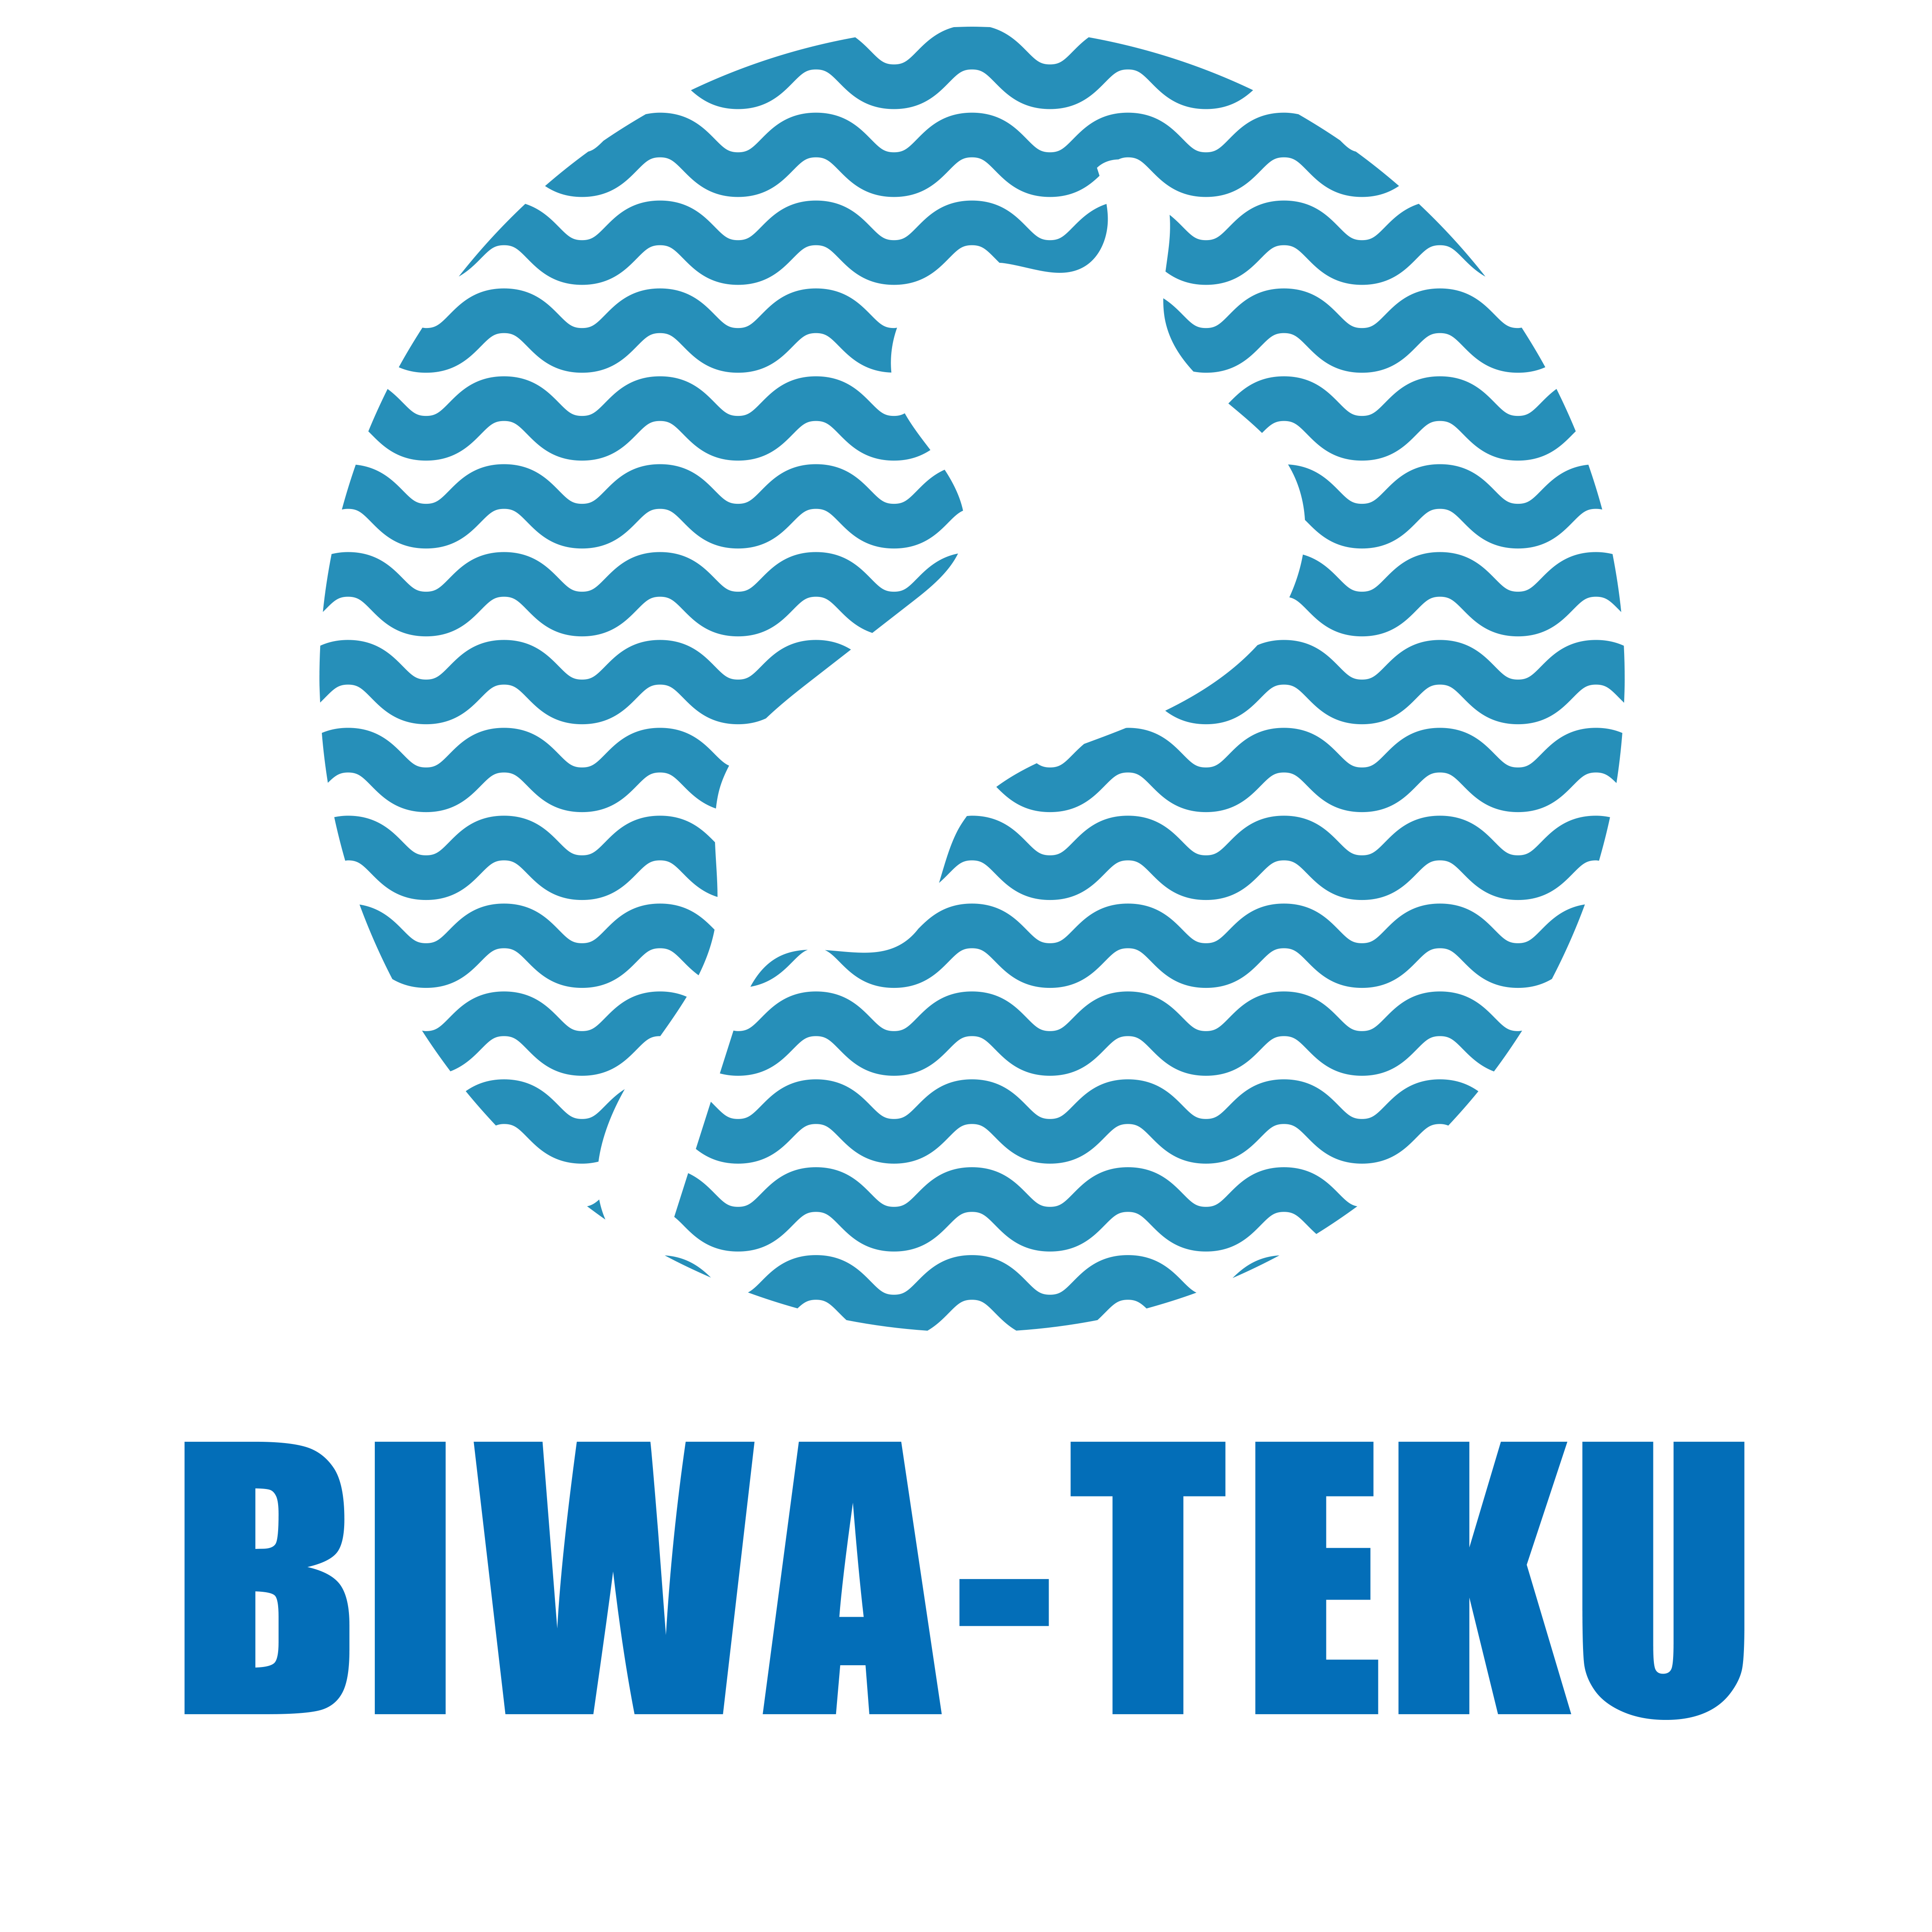 「健康推進アプリ「BIWA-TEKU」を使ってみませんか？」へリンク